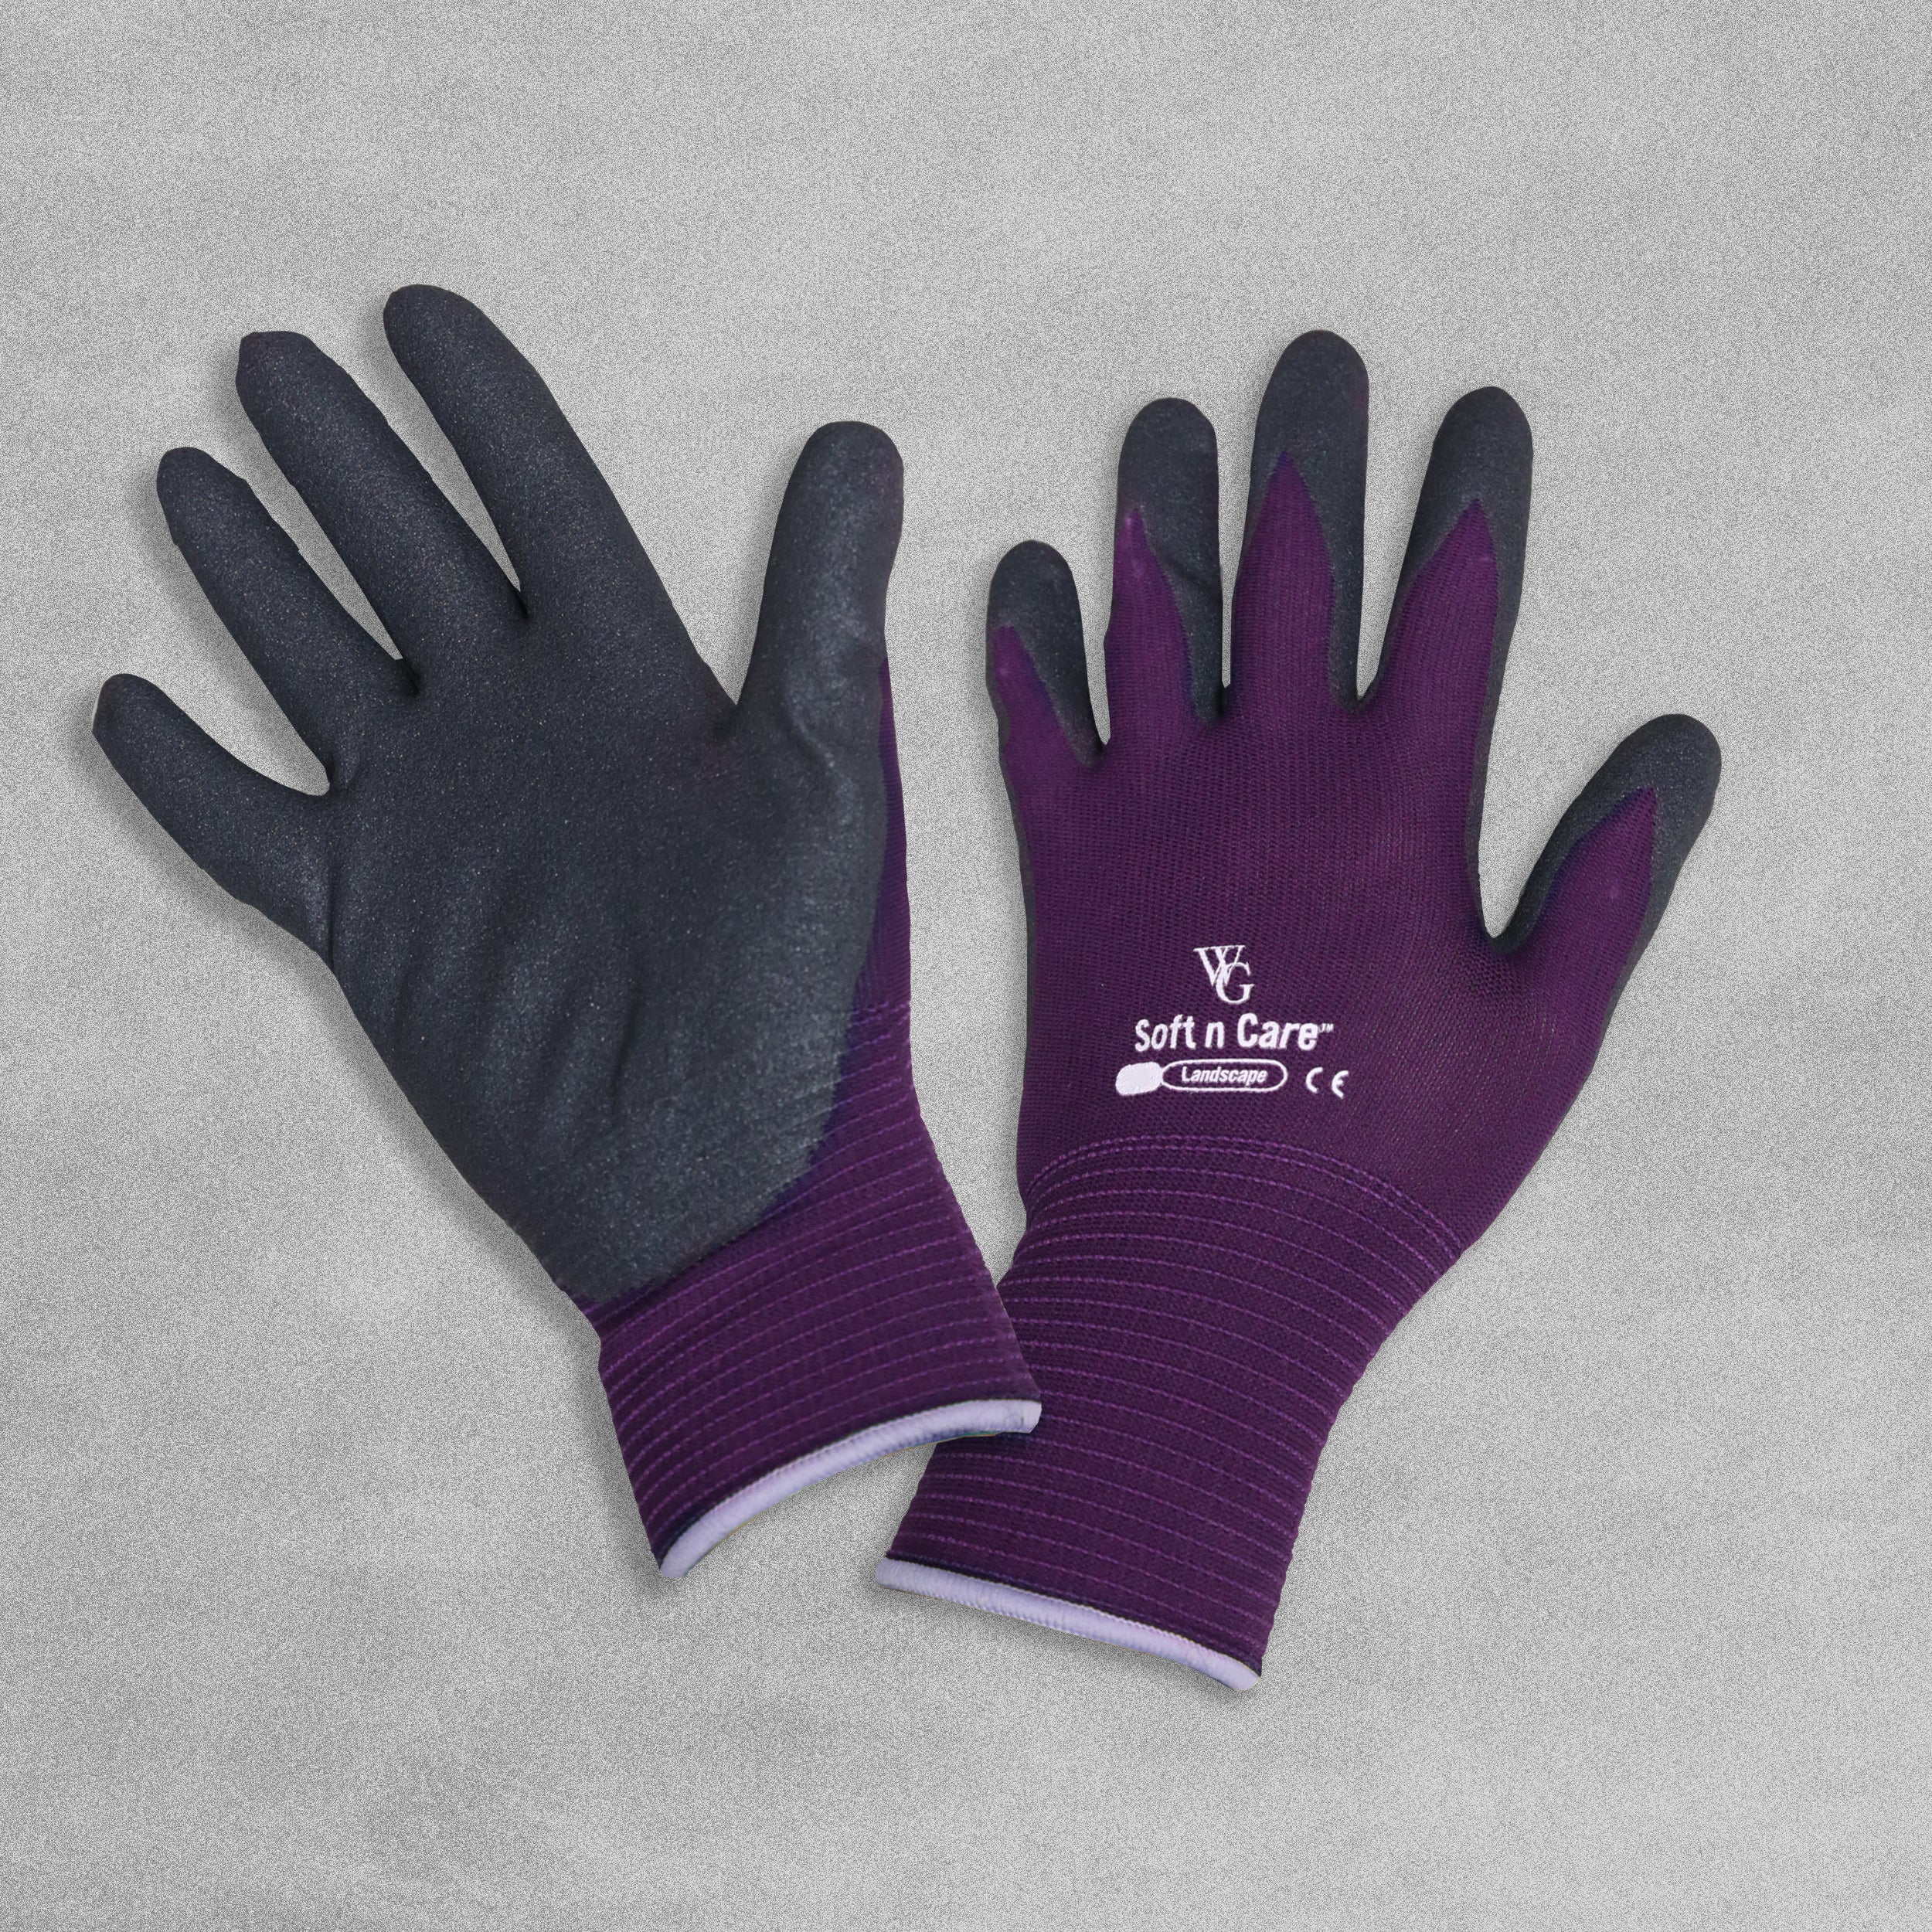 Soft n Care Garden gloves - purple